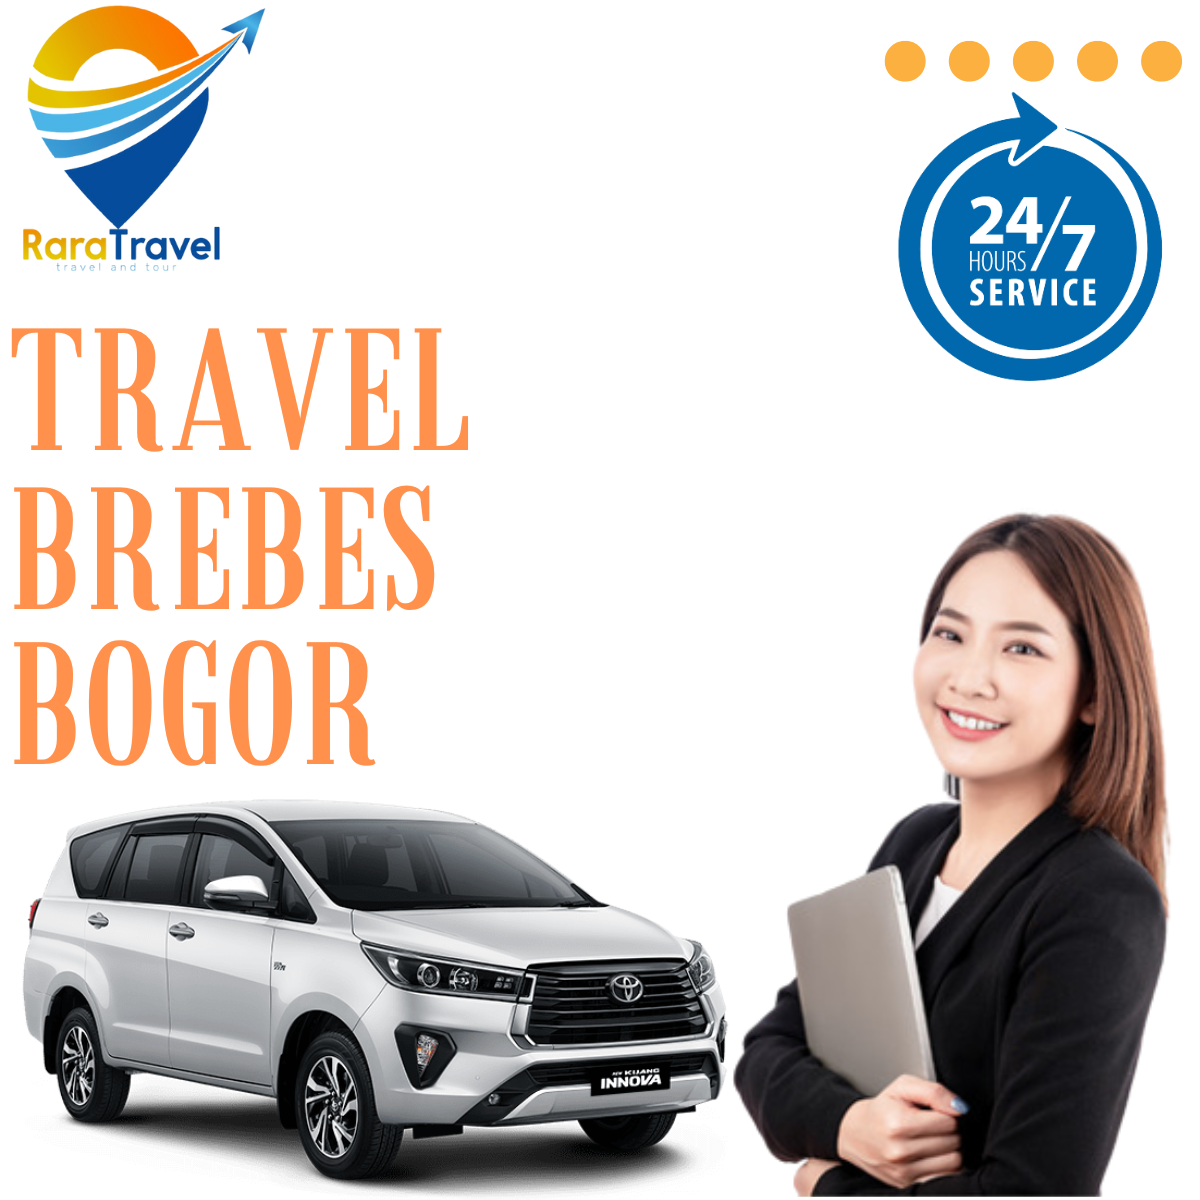 Travel Brebes Bogor Hiace Murah Door to Door - RaraTravel.id